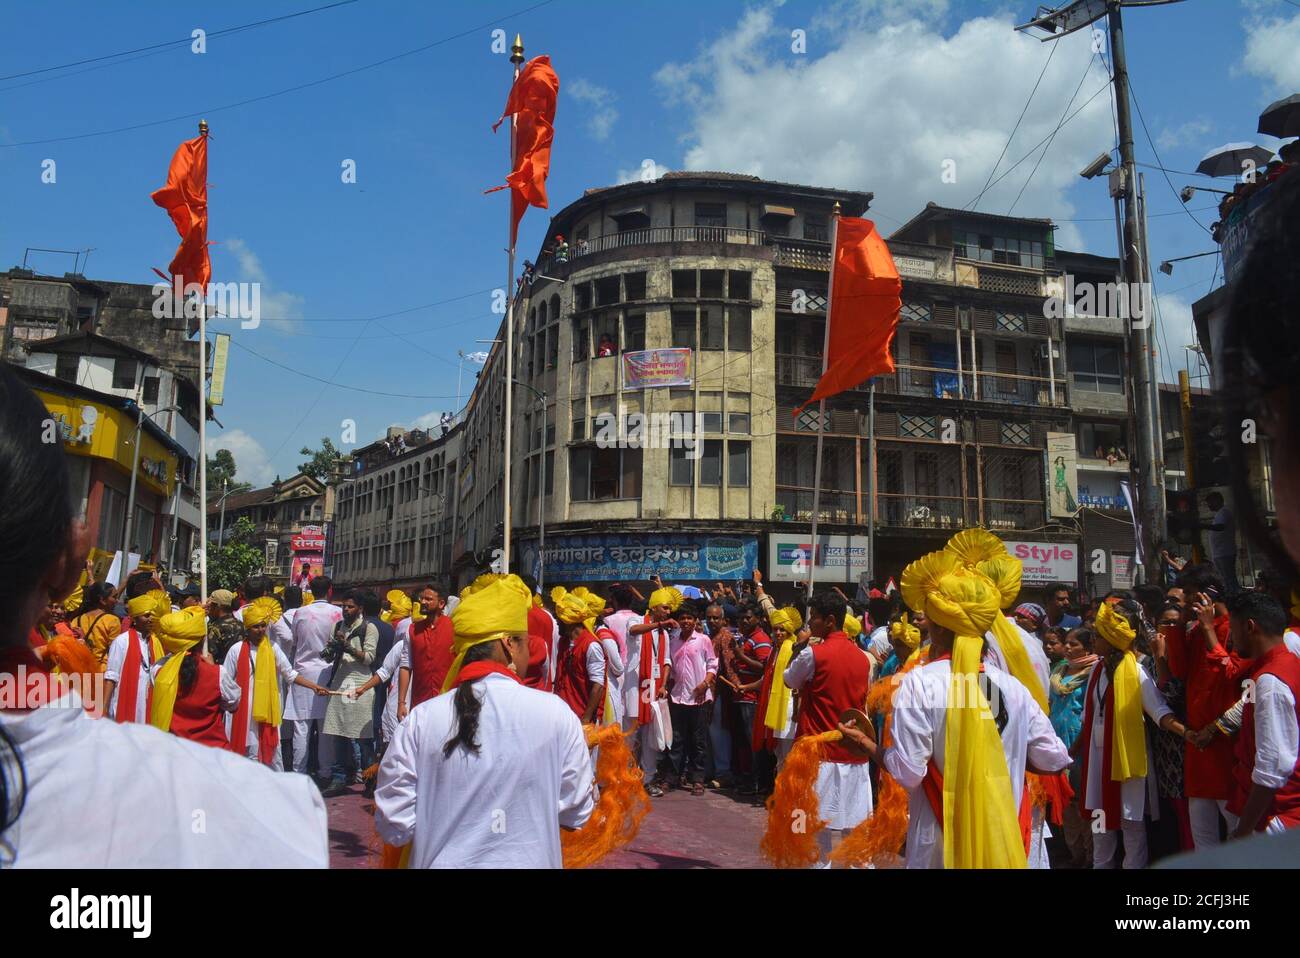 Pune, Indien - 4. September 2017: Dhol tasha pathak tanzt mit drei orangefarbenen Fahnen und feiert das Ganapati visarjan Festival. Dhol tasha pathak auf der Straße Stockfoto